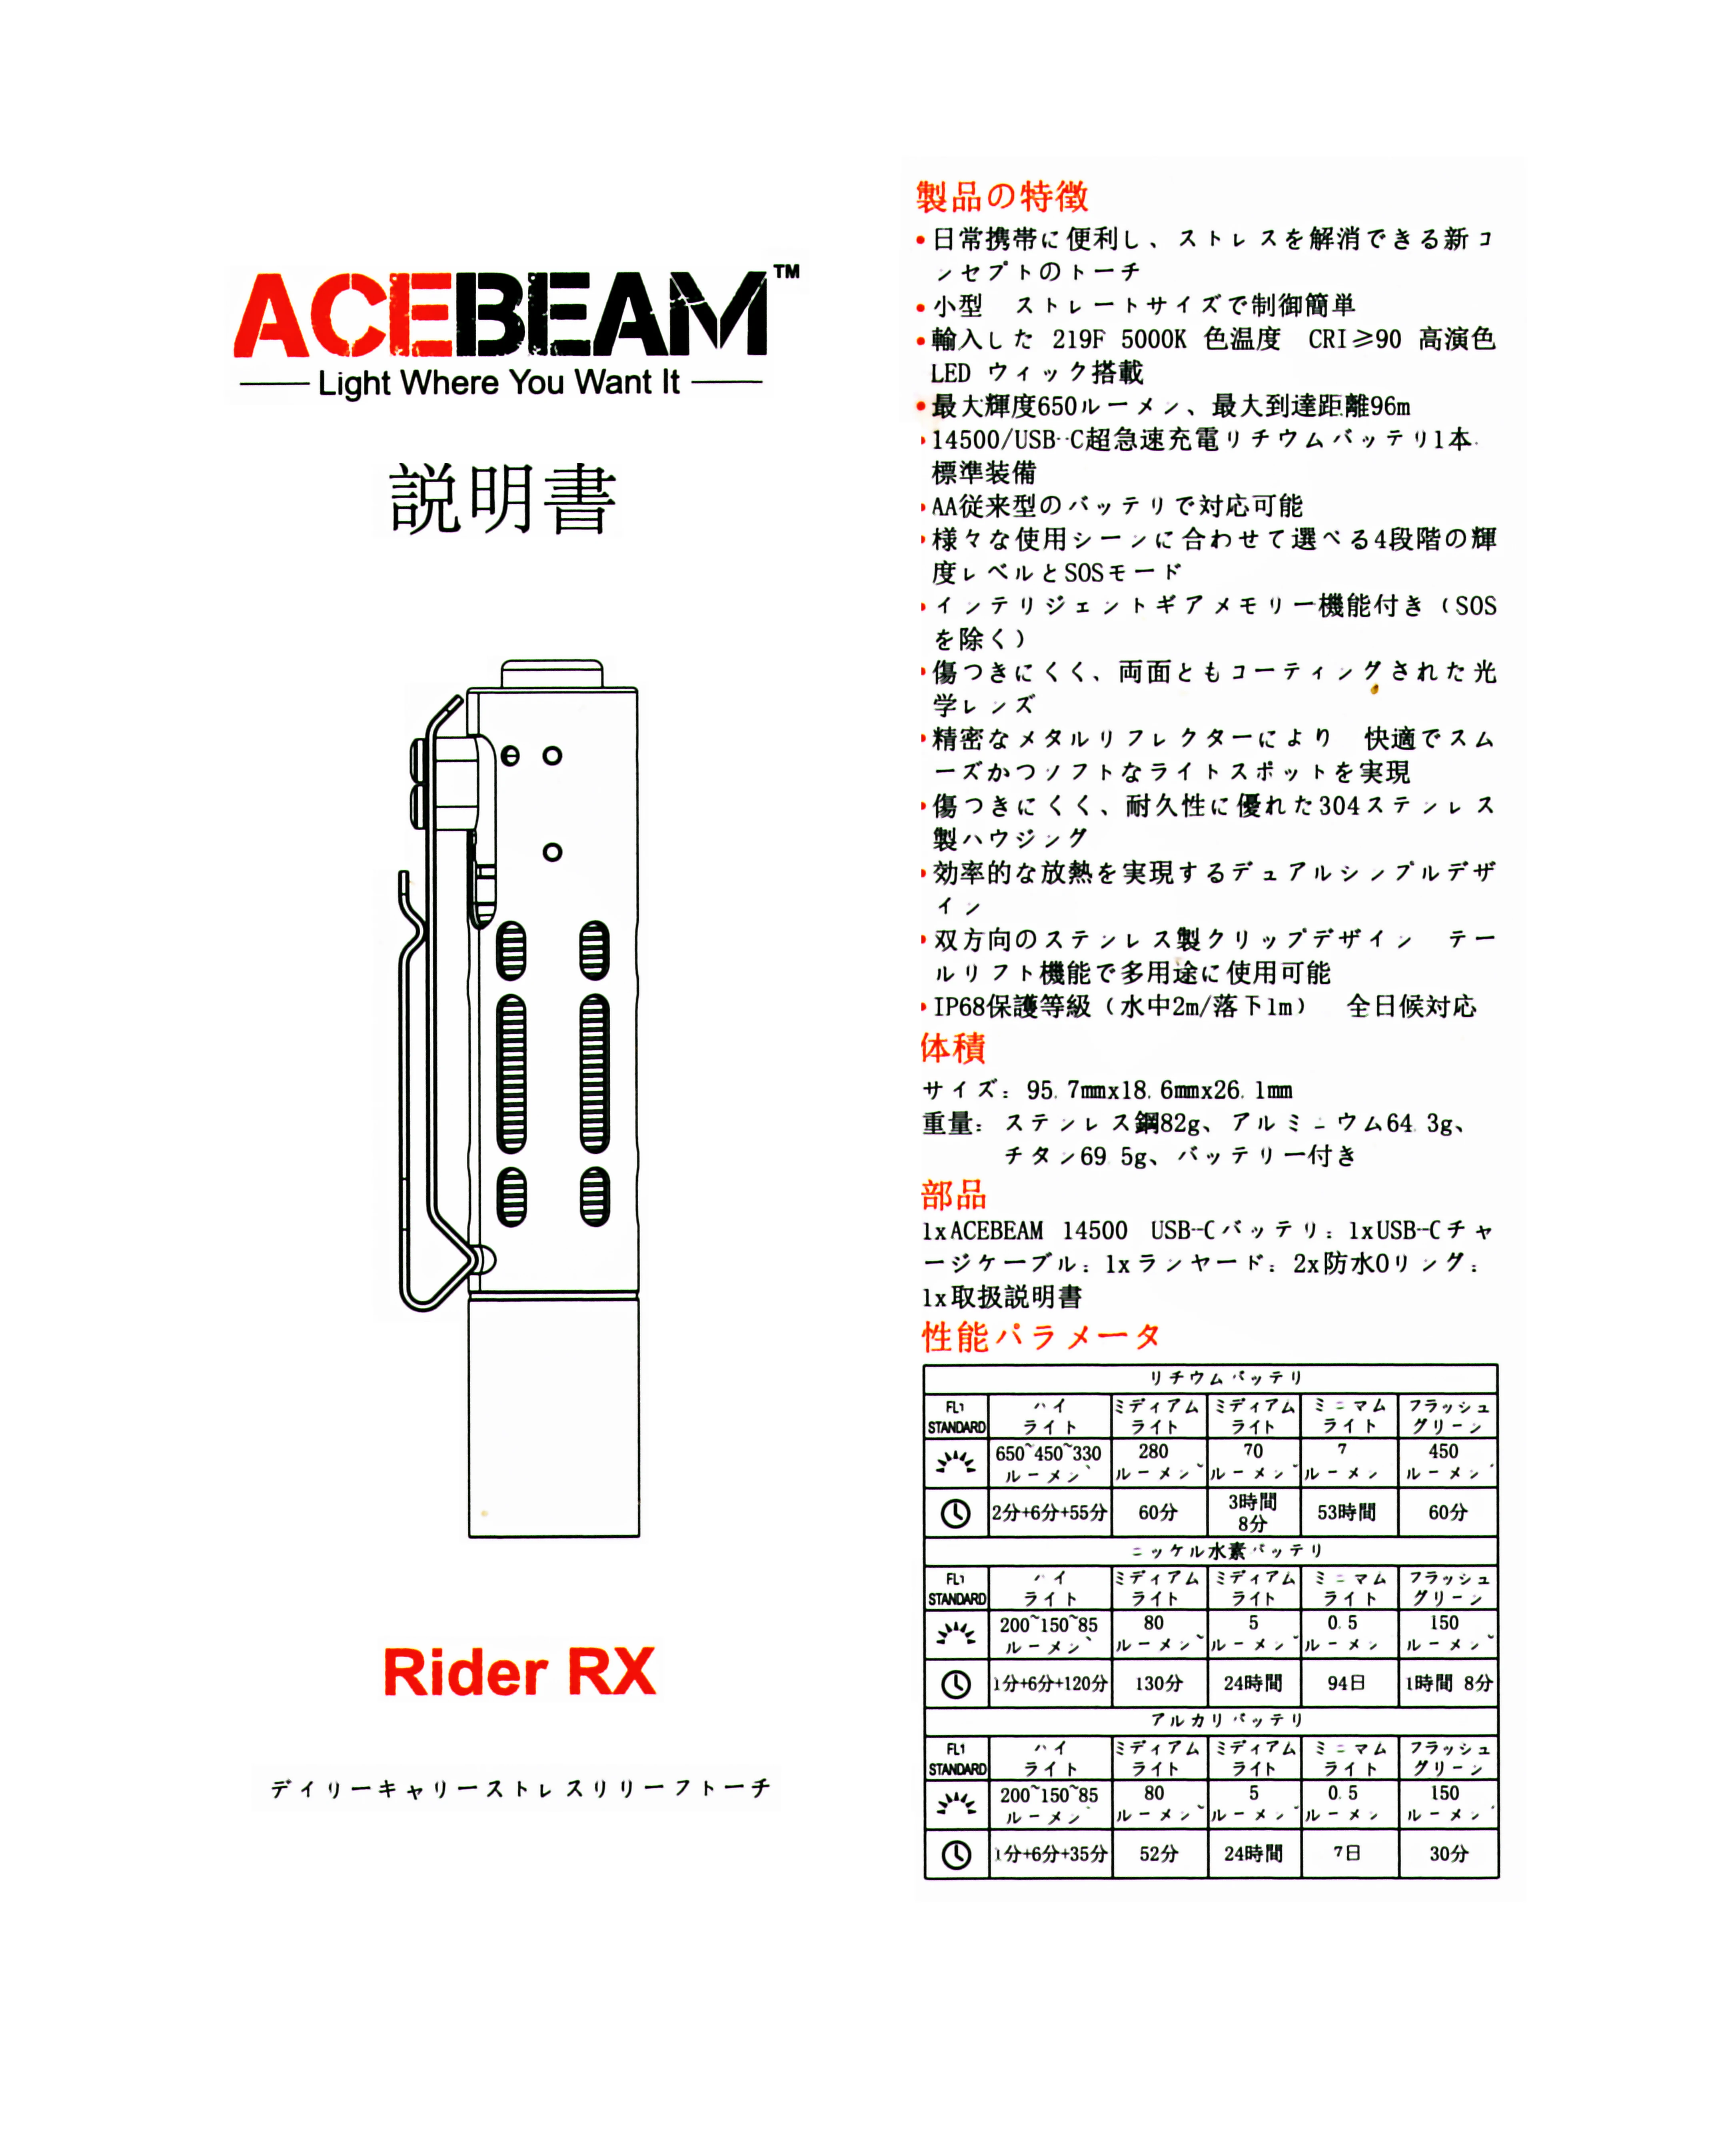 ACEBEAM Rider RX Aluminium / charge